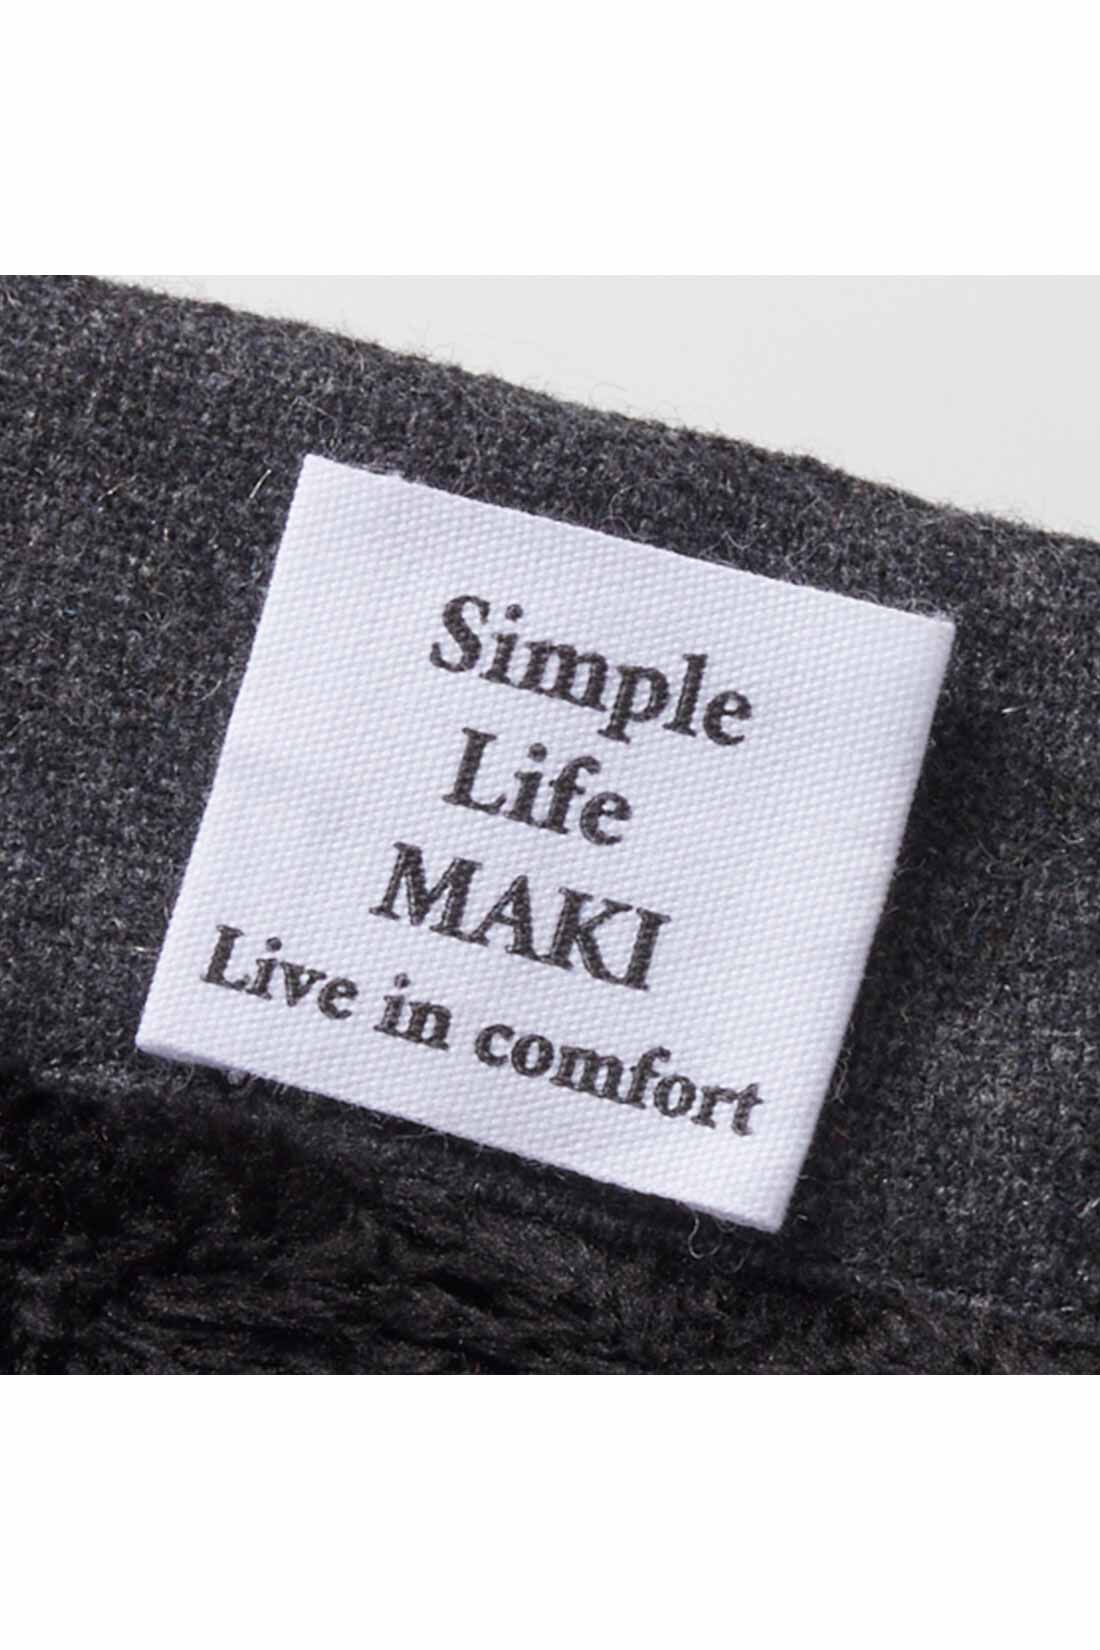 Live in  comfort|リブ イン コンフォート　シンプルライフ研究家 マキさんとつくった 裏ボアで暖か ざばっと着るだけ ウール混ジャンパースカート〈チャコールグレー〉|背中には前後がすぐわかるタグ付き。